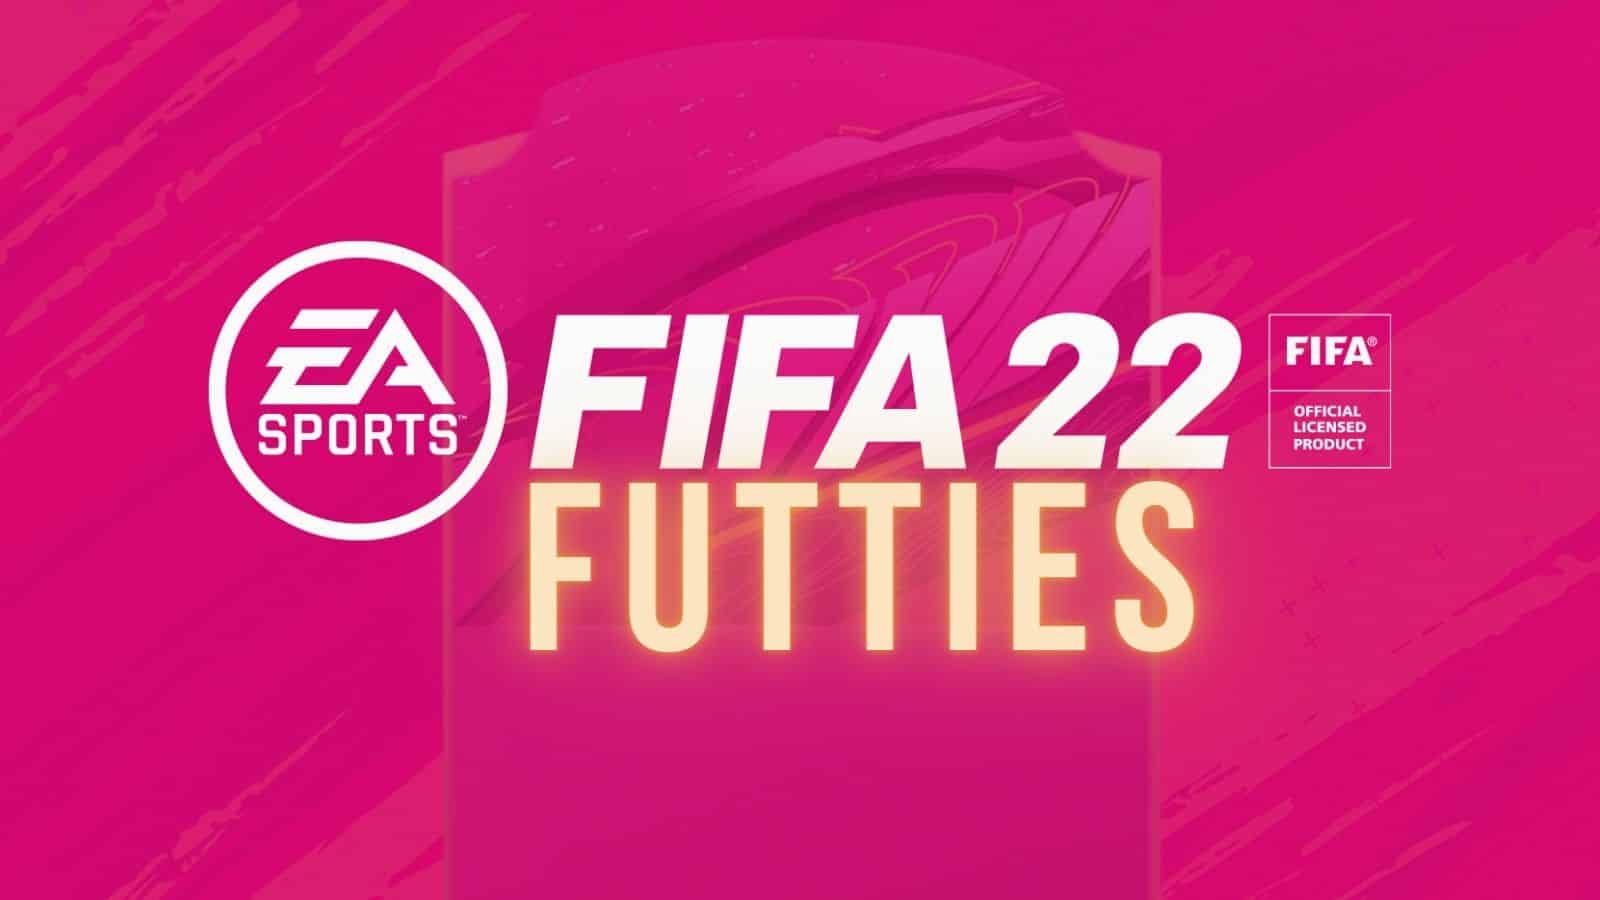 FIFA 22 FUTTIES 'Best Of' Batch 1 : TOTY Mbappe, Headliners Salah